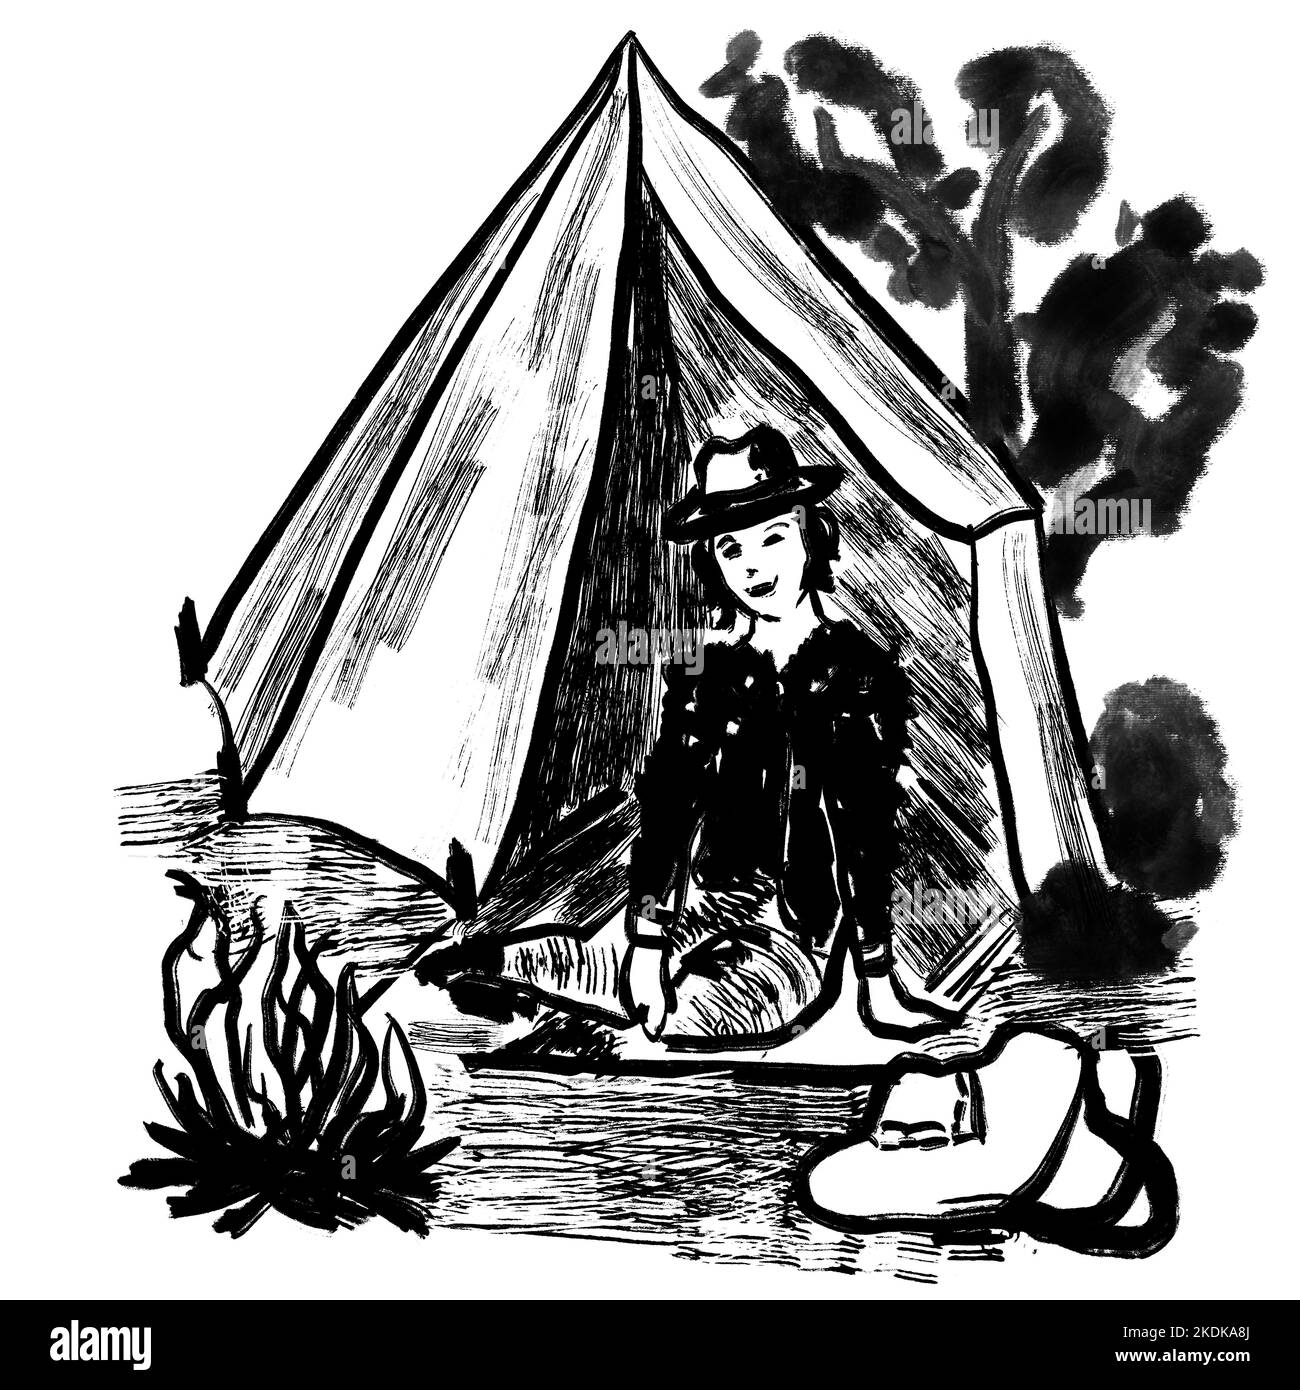 Illustration dessinée à la main de la femme campant dans une tente avec camp sac de feu arbres paysage à l'extérieur. Illustration d'esquisse à l'encre noire blanche, dessin minimaliste avec traits de pinceau simples Banque D'Images